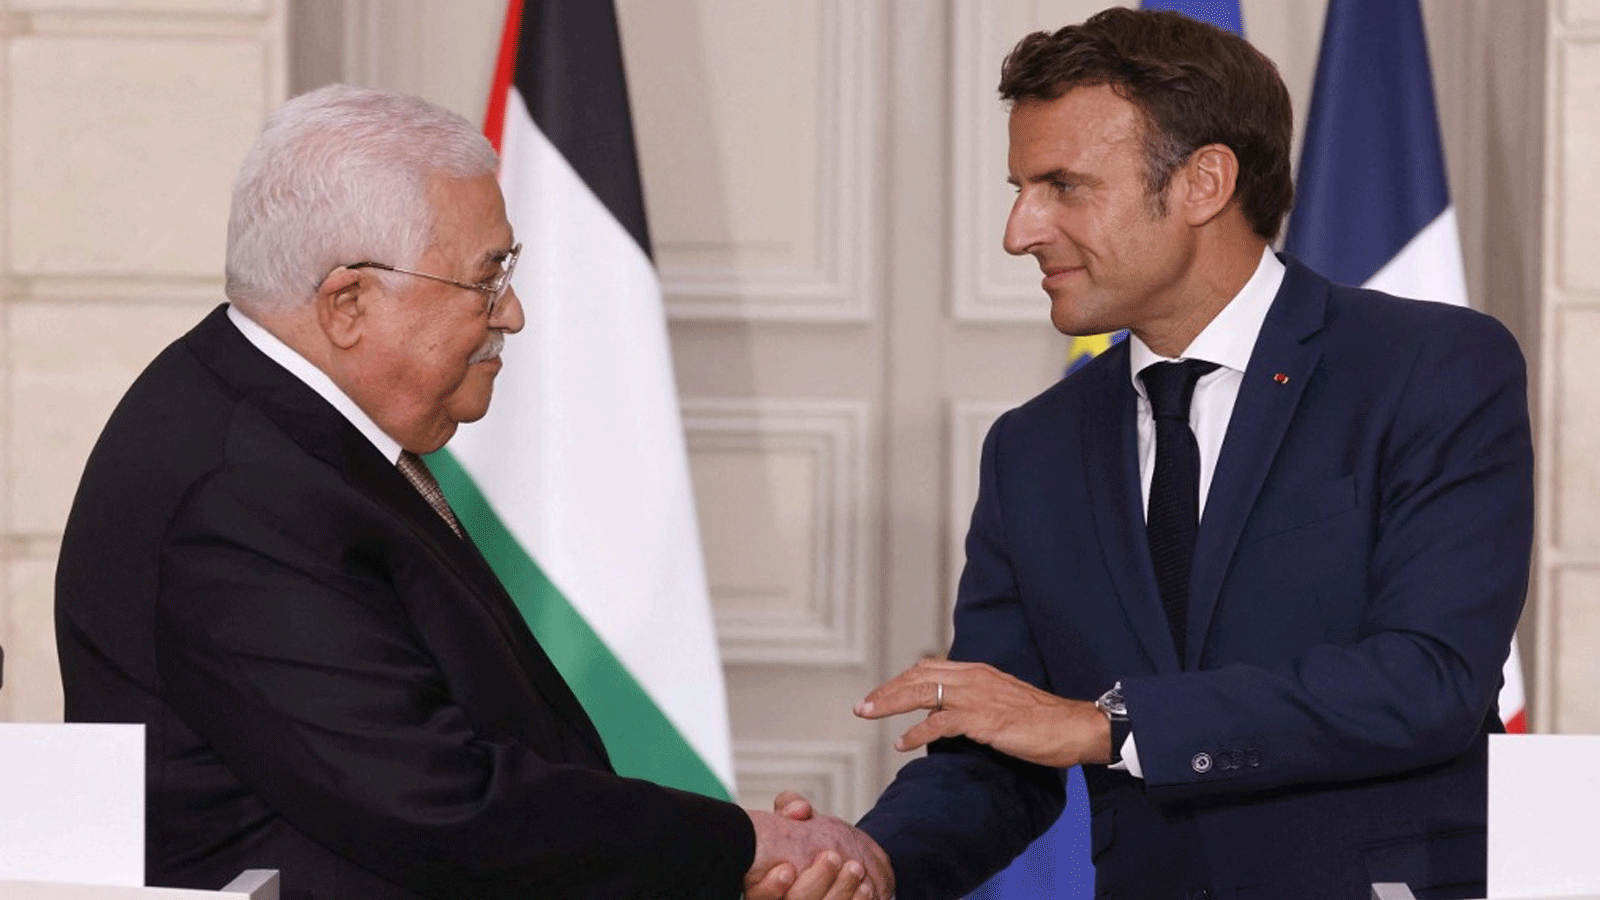 الرئيس الفرنسي إيمانويل ماكرون يستقبل رئيس السلطة الفلسطينية محمود عباس